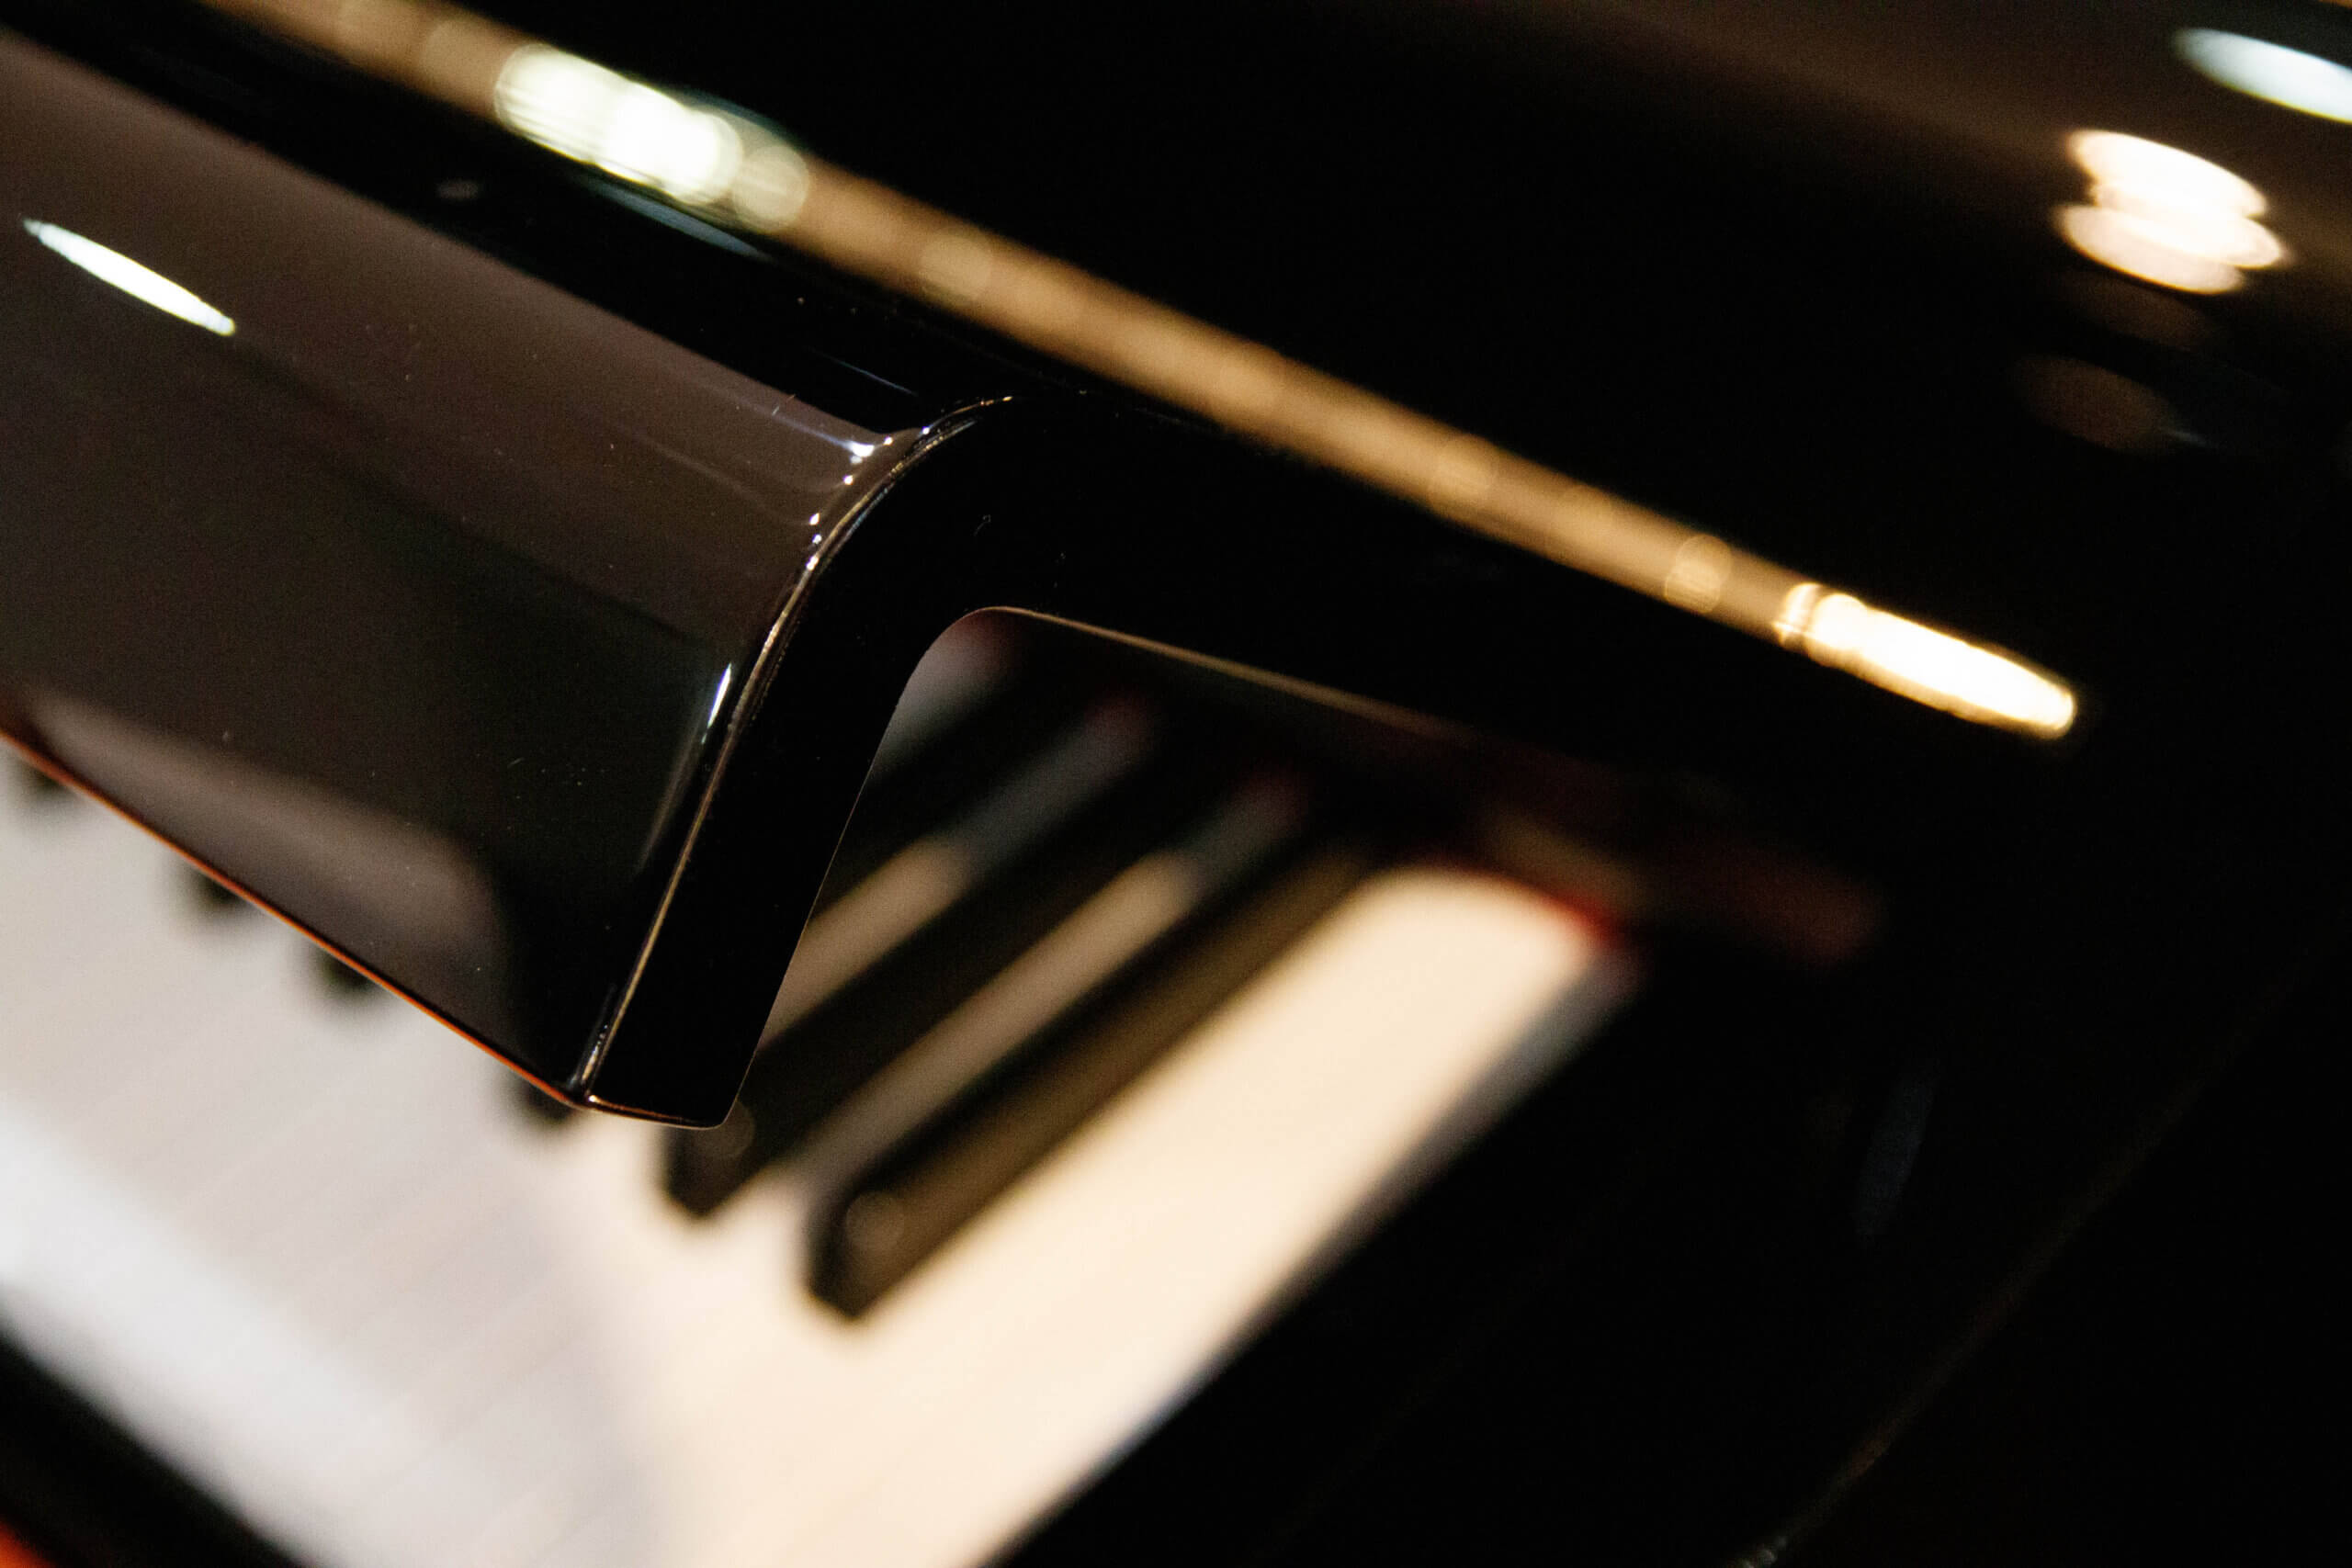 ヤマハ MC10Bl| 中古ピアノ 自社工房リフレッシュ済3年保証付 | 新響 